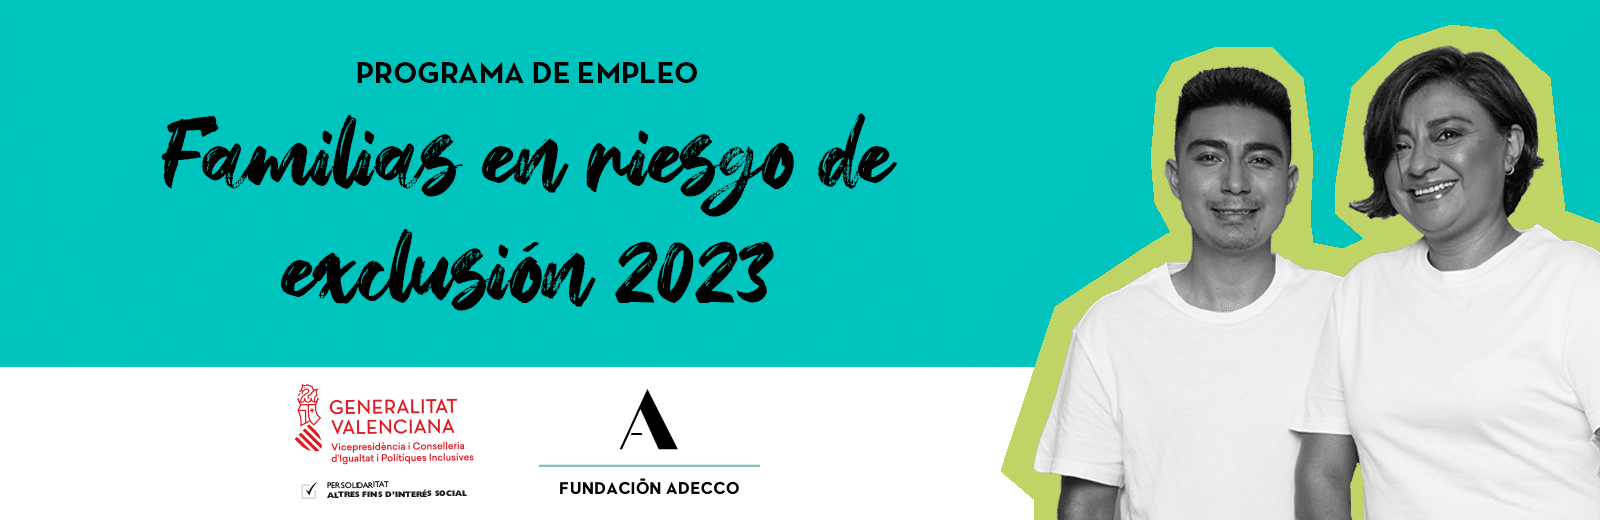 Mujer y adolescente. Programa de empleo para familias en riesgo de exclusión 2023. Fundación Adecco y Generalitat Valenciana.